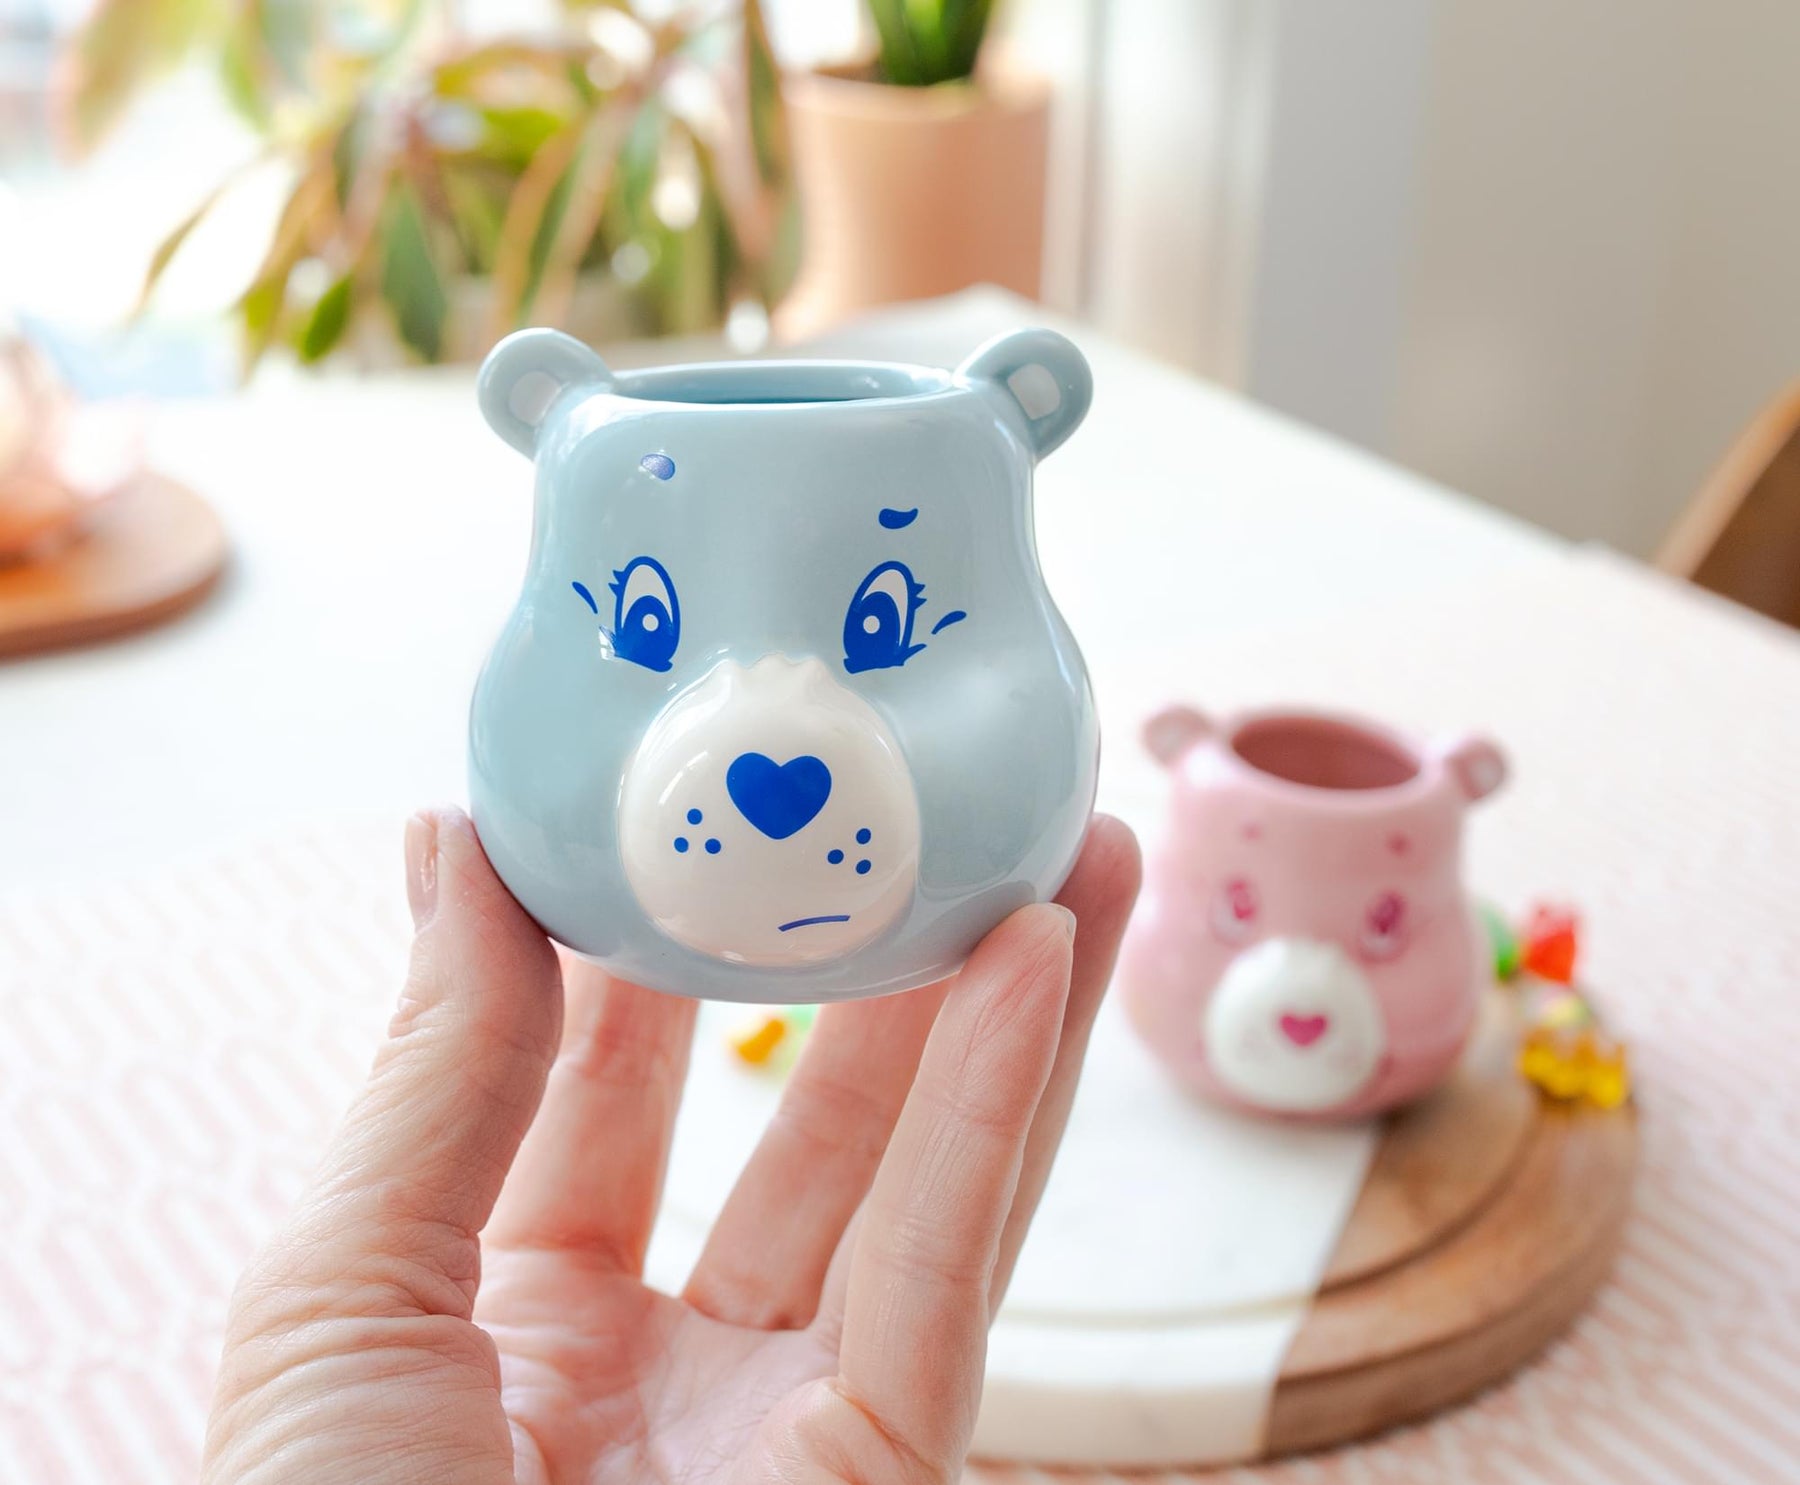 Care Bears Grumpy Bear Sculpted Ceramic Mini Mug | Holds 3 Ounces